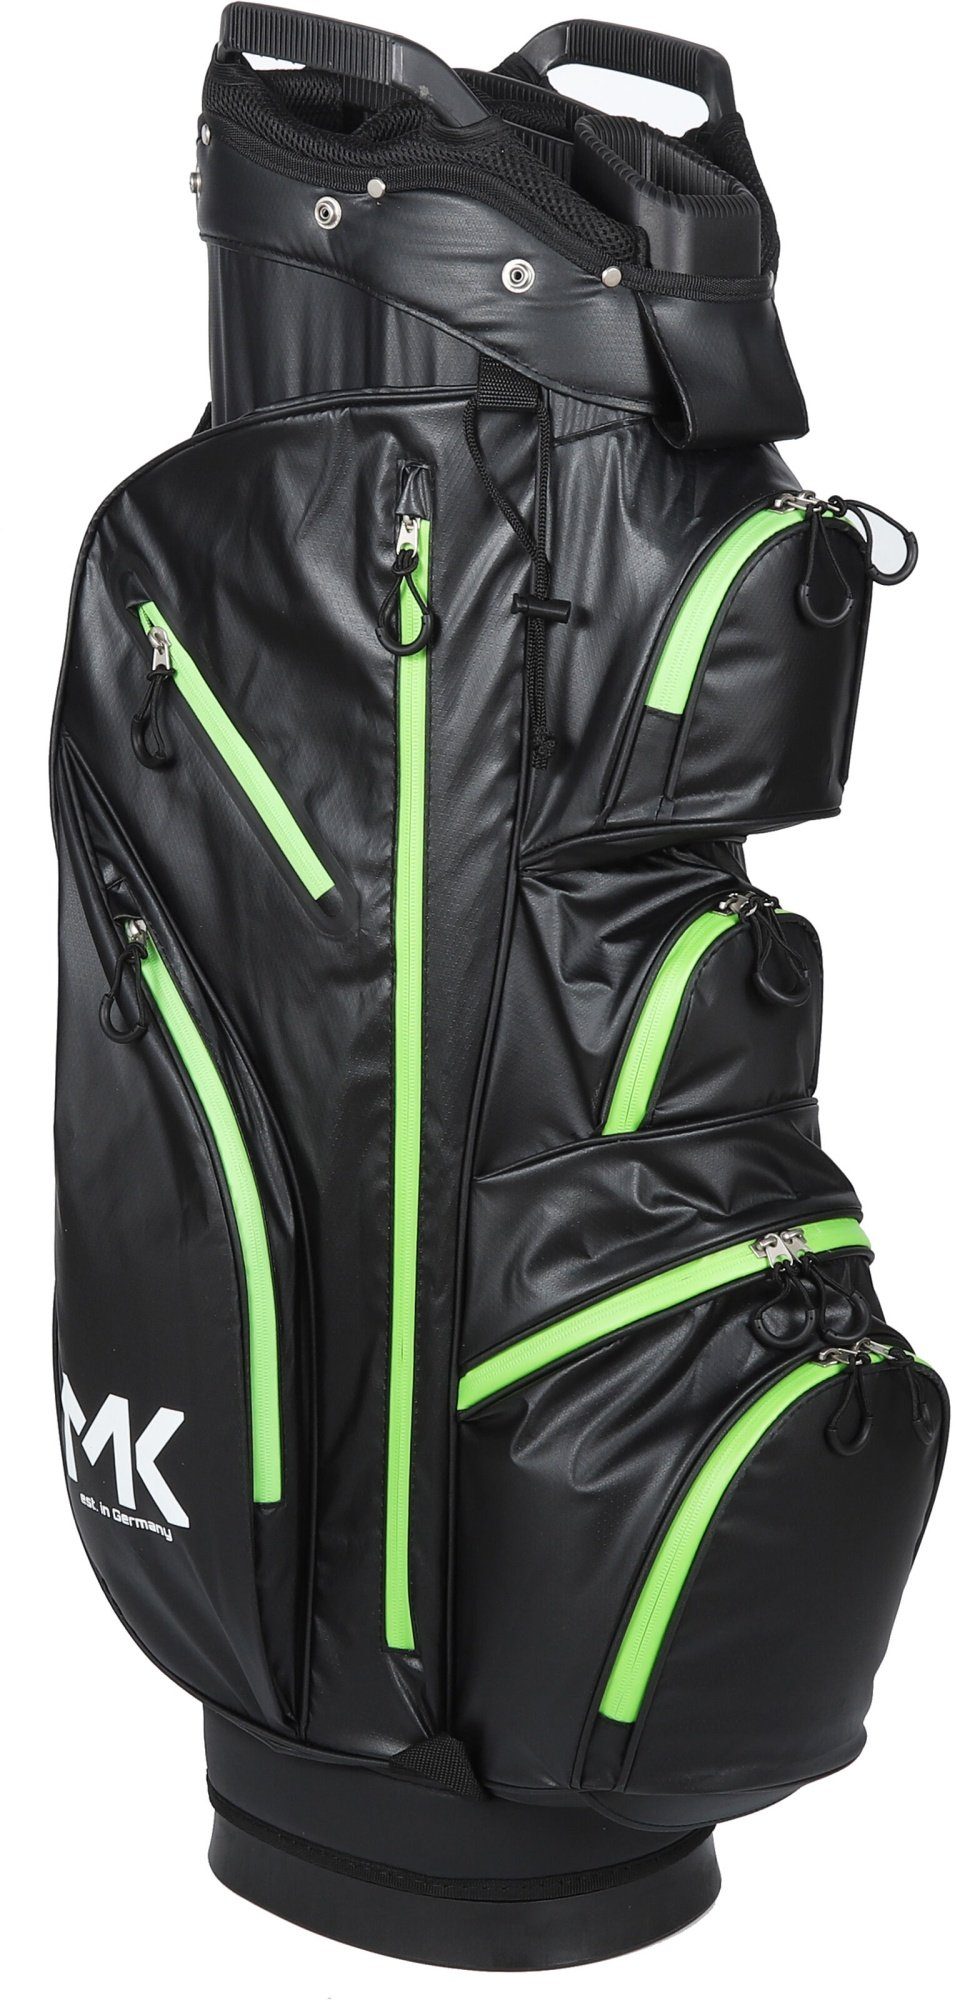 MK Trolleybag Equipment Golf MK - Tour Golftasche, Golf Golfbag wasserdicht Golftrolley Grün Solid +